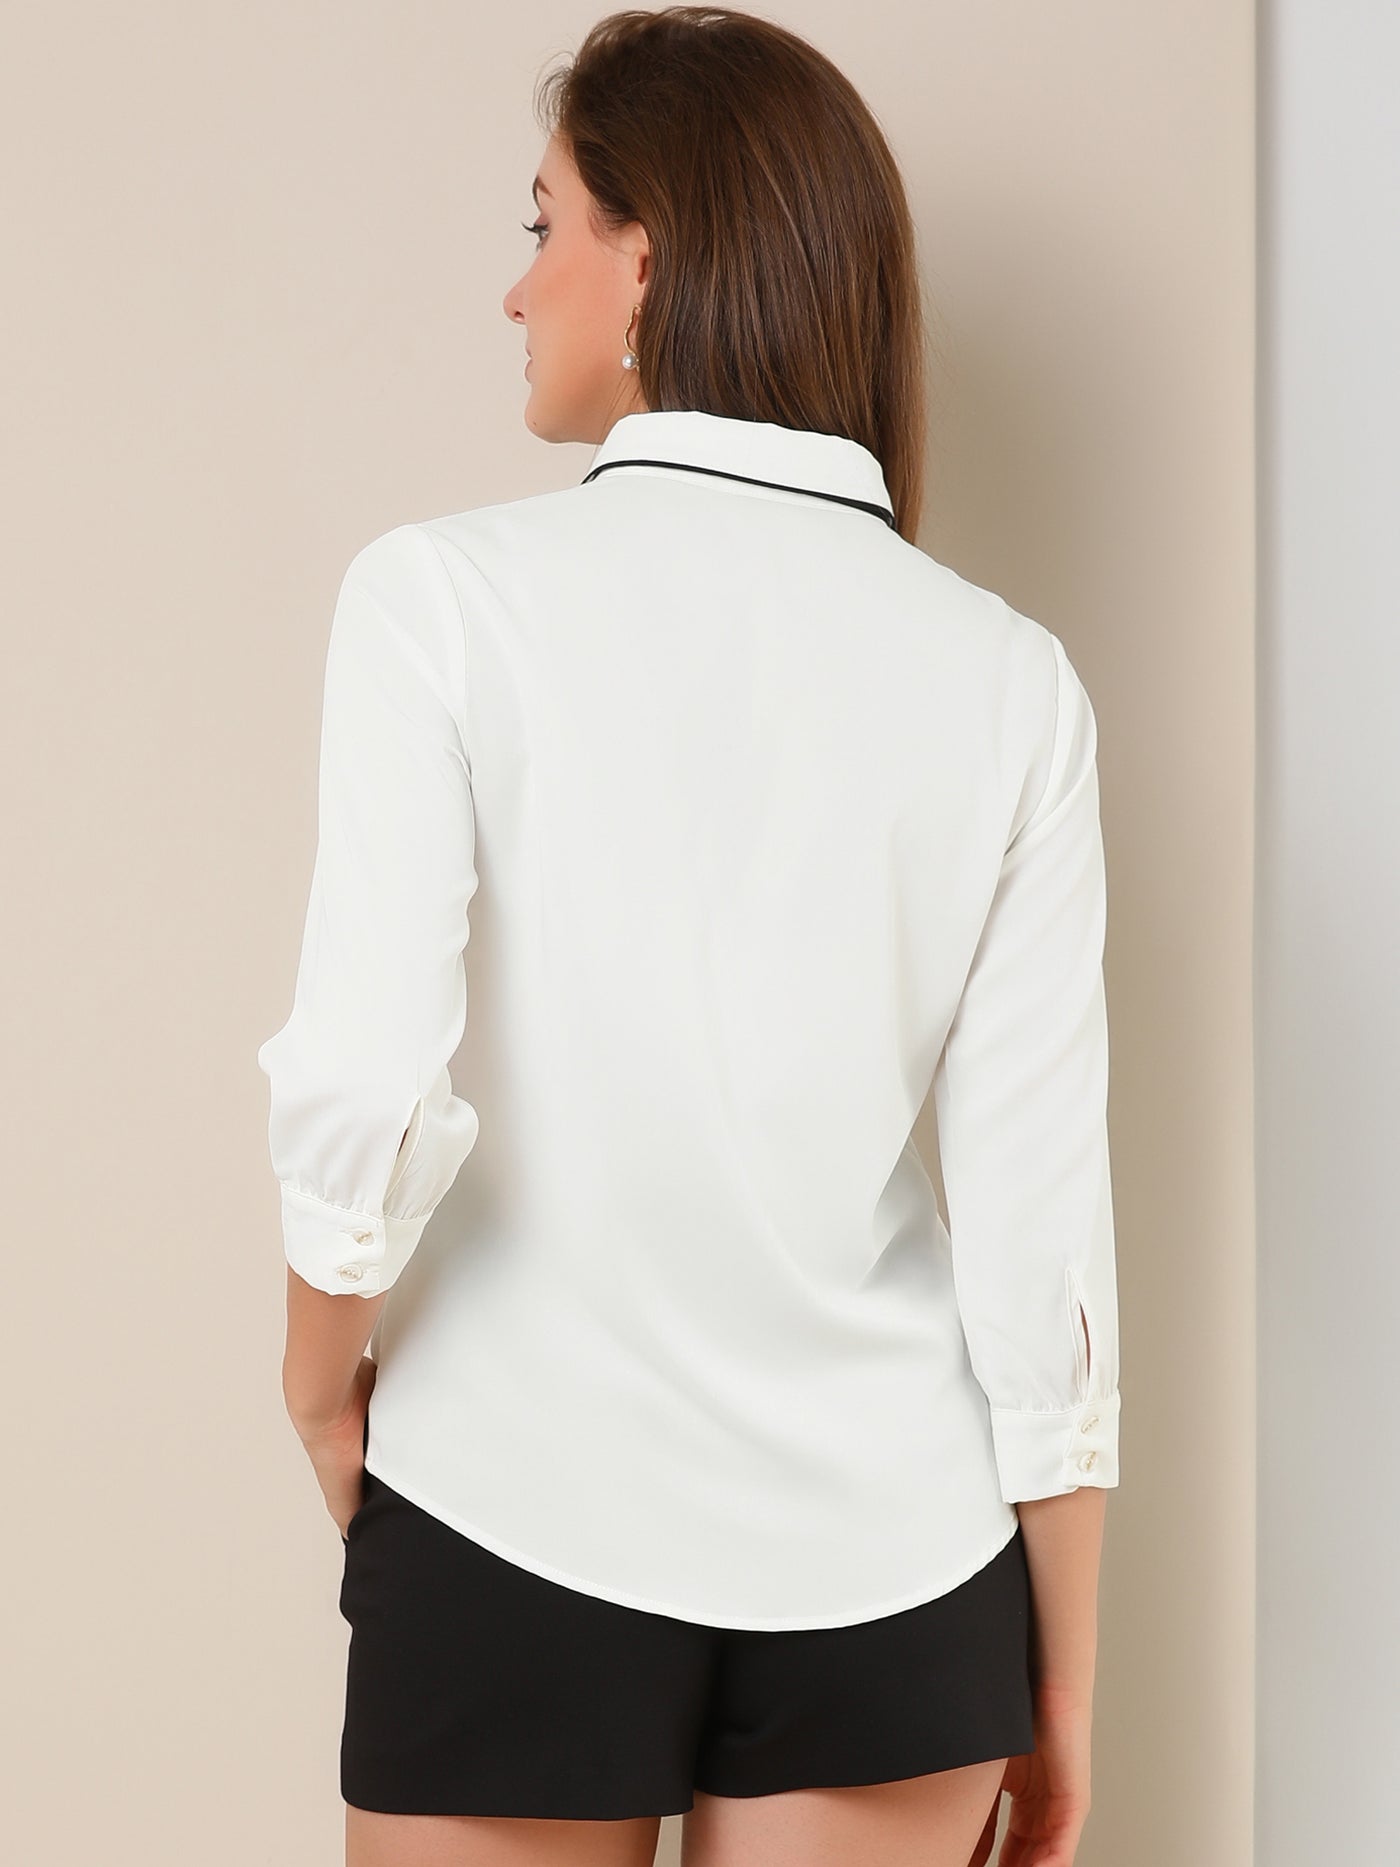 Allegra K Elegant Contrast Collar 3/4 Sleeve Button Up Tie Neck Shirt